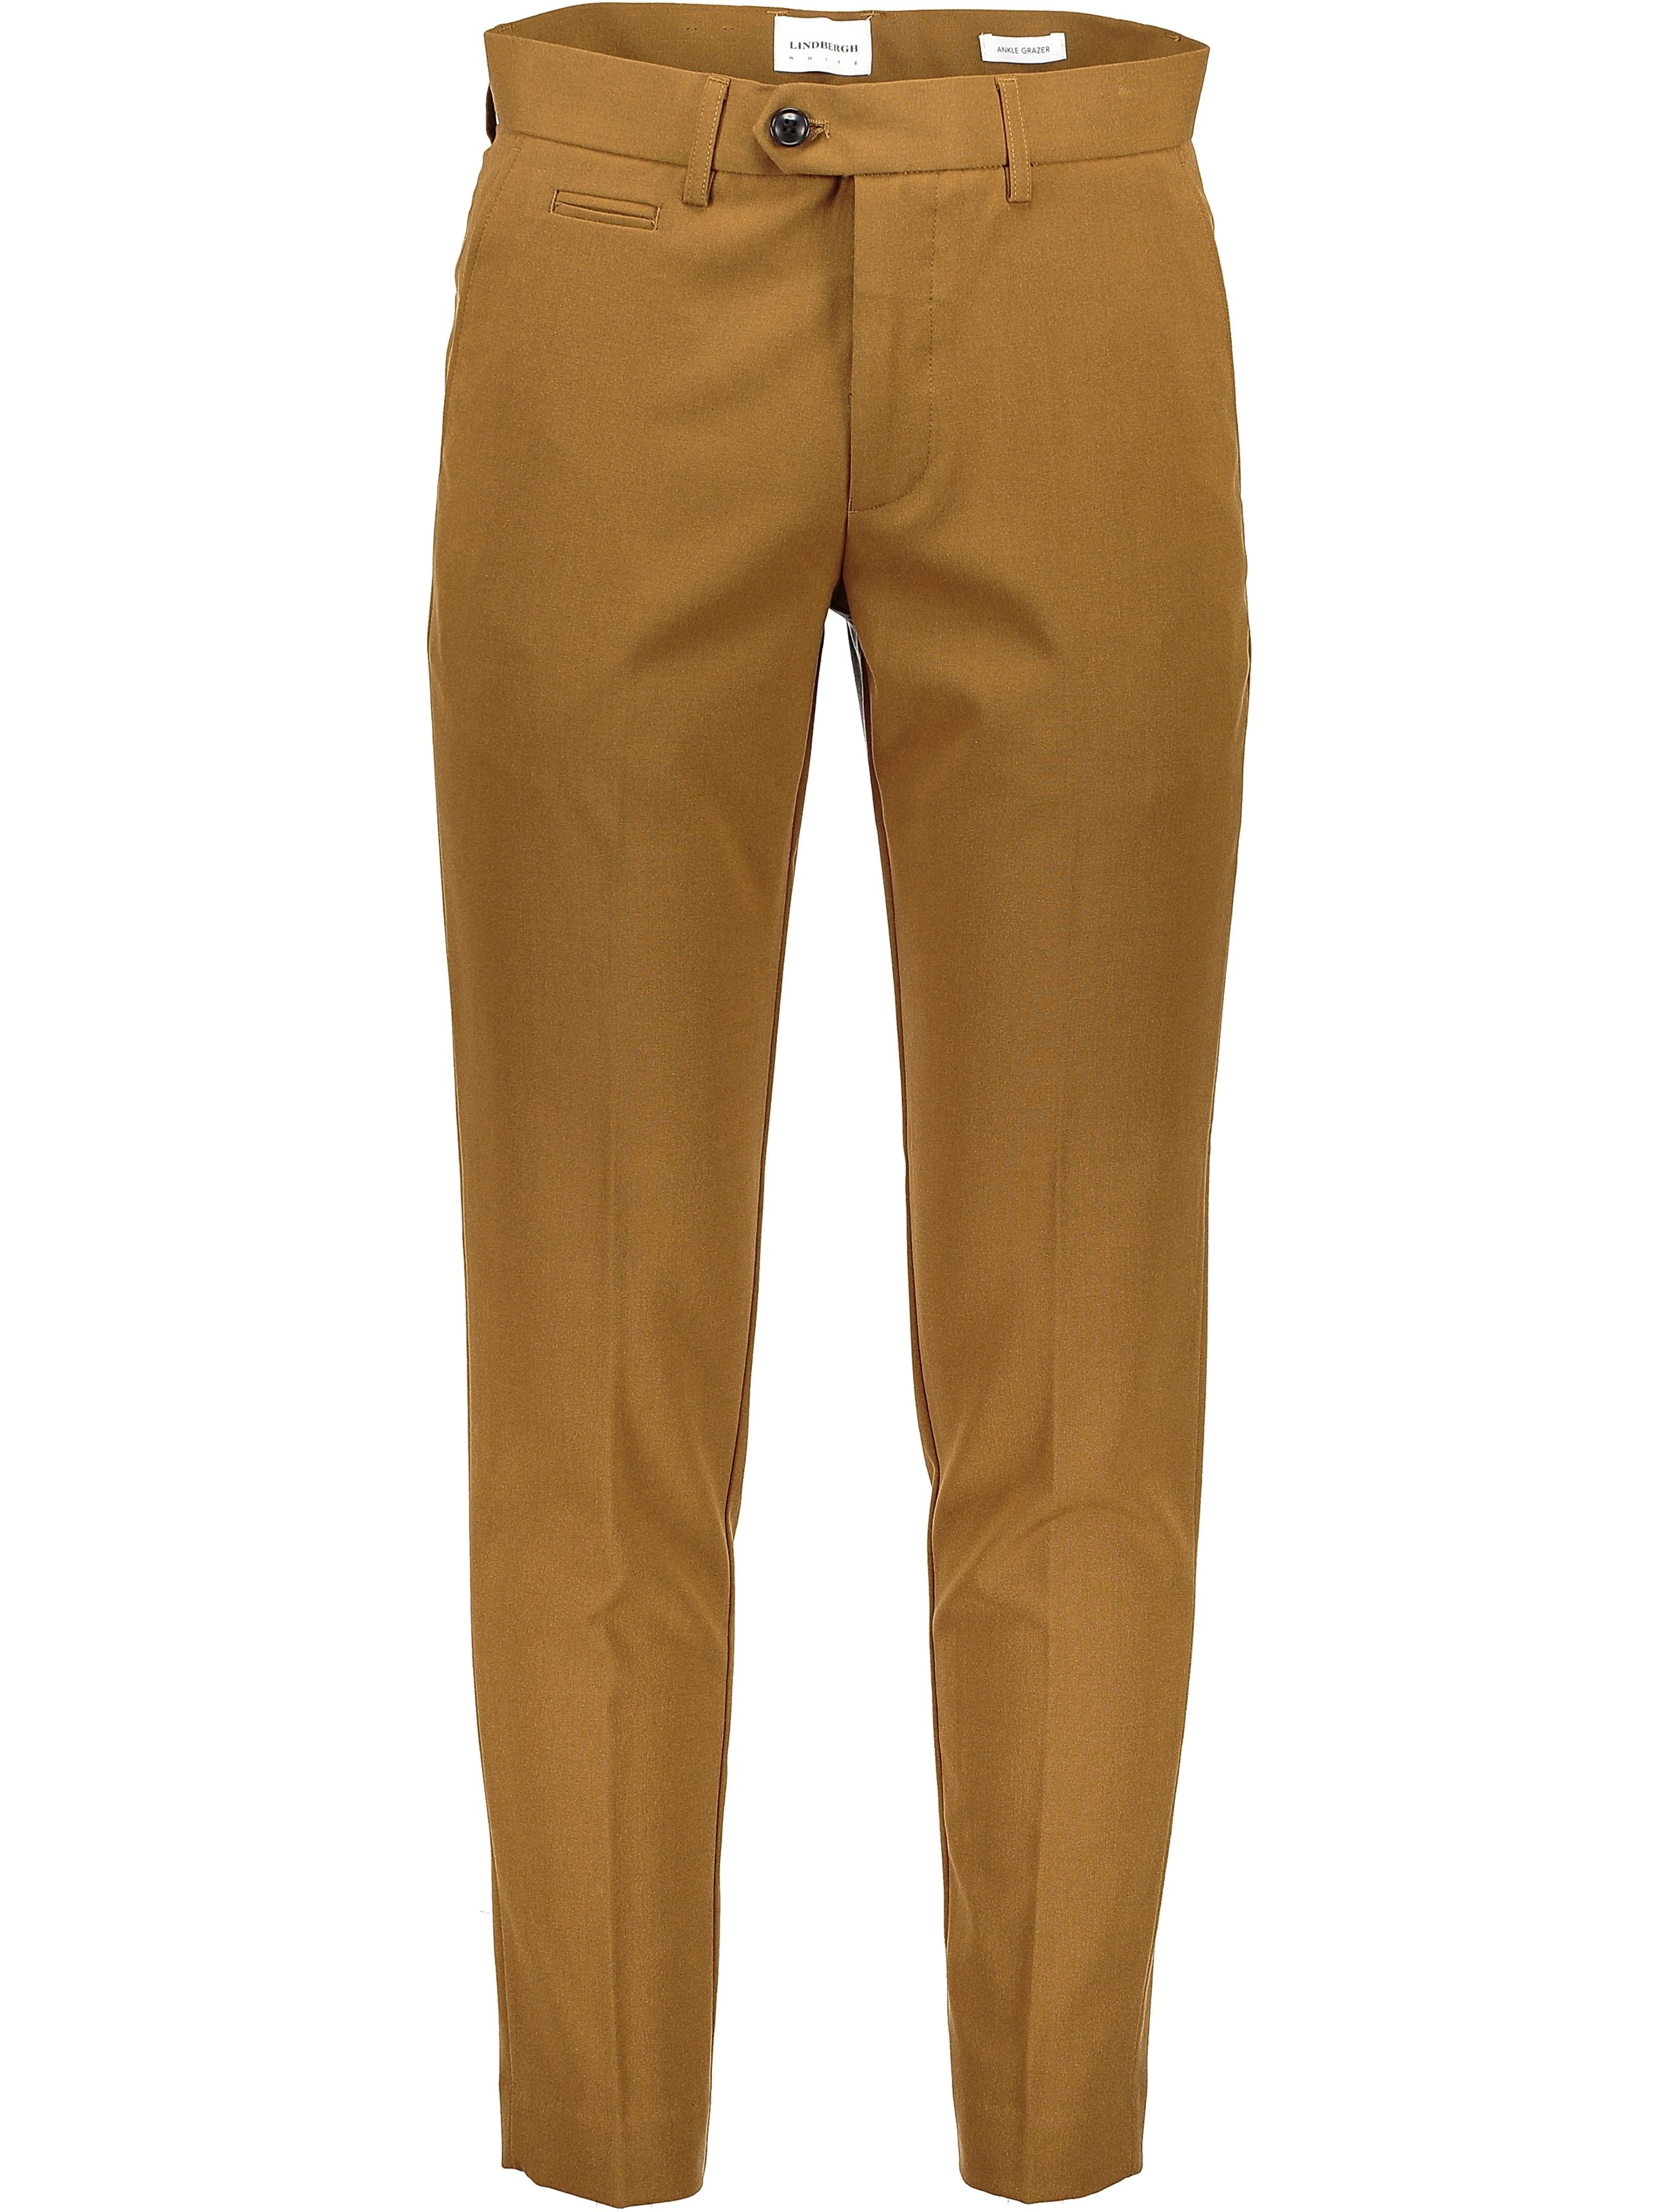 Lindbergh Performance pants brown / lt brown